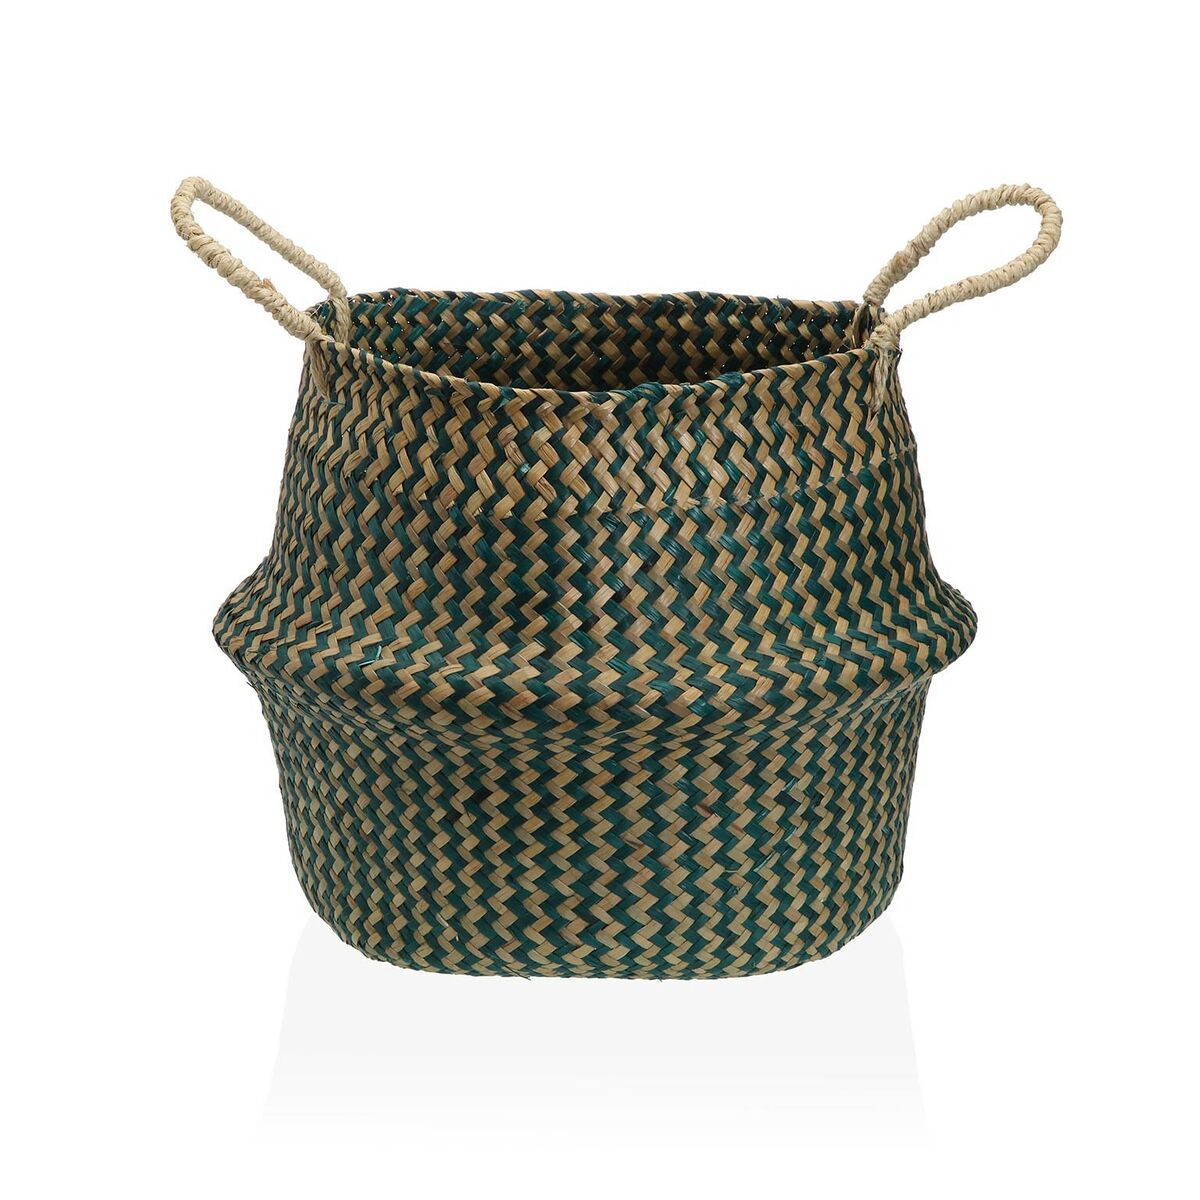 Decorative basket Versa Green Marine algae Ø 28 cm